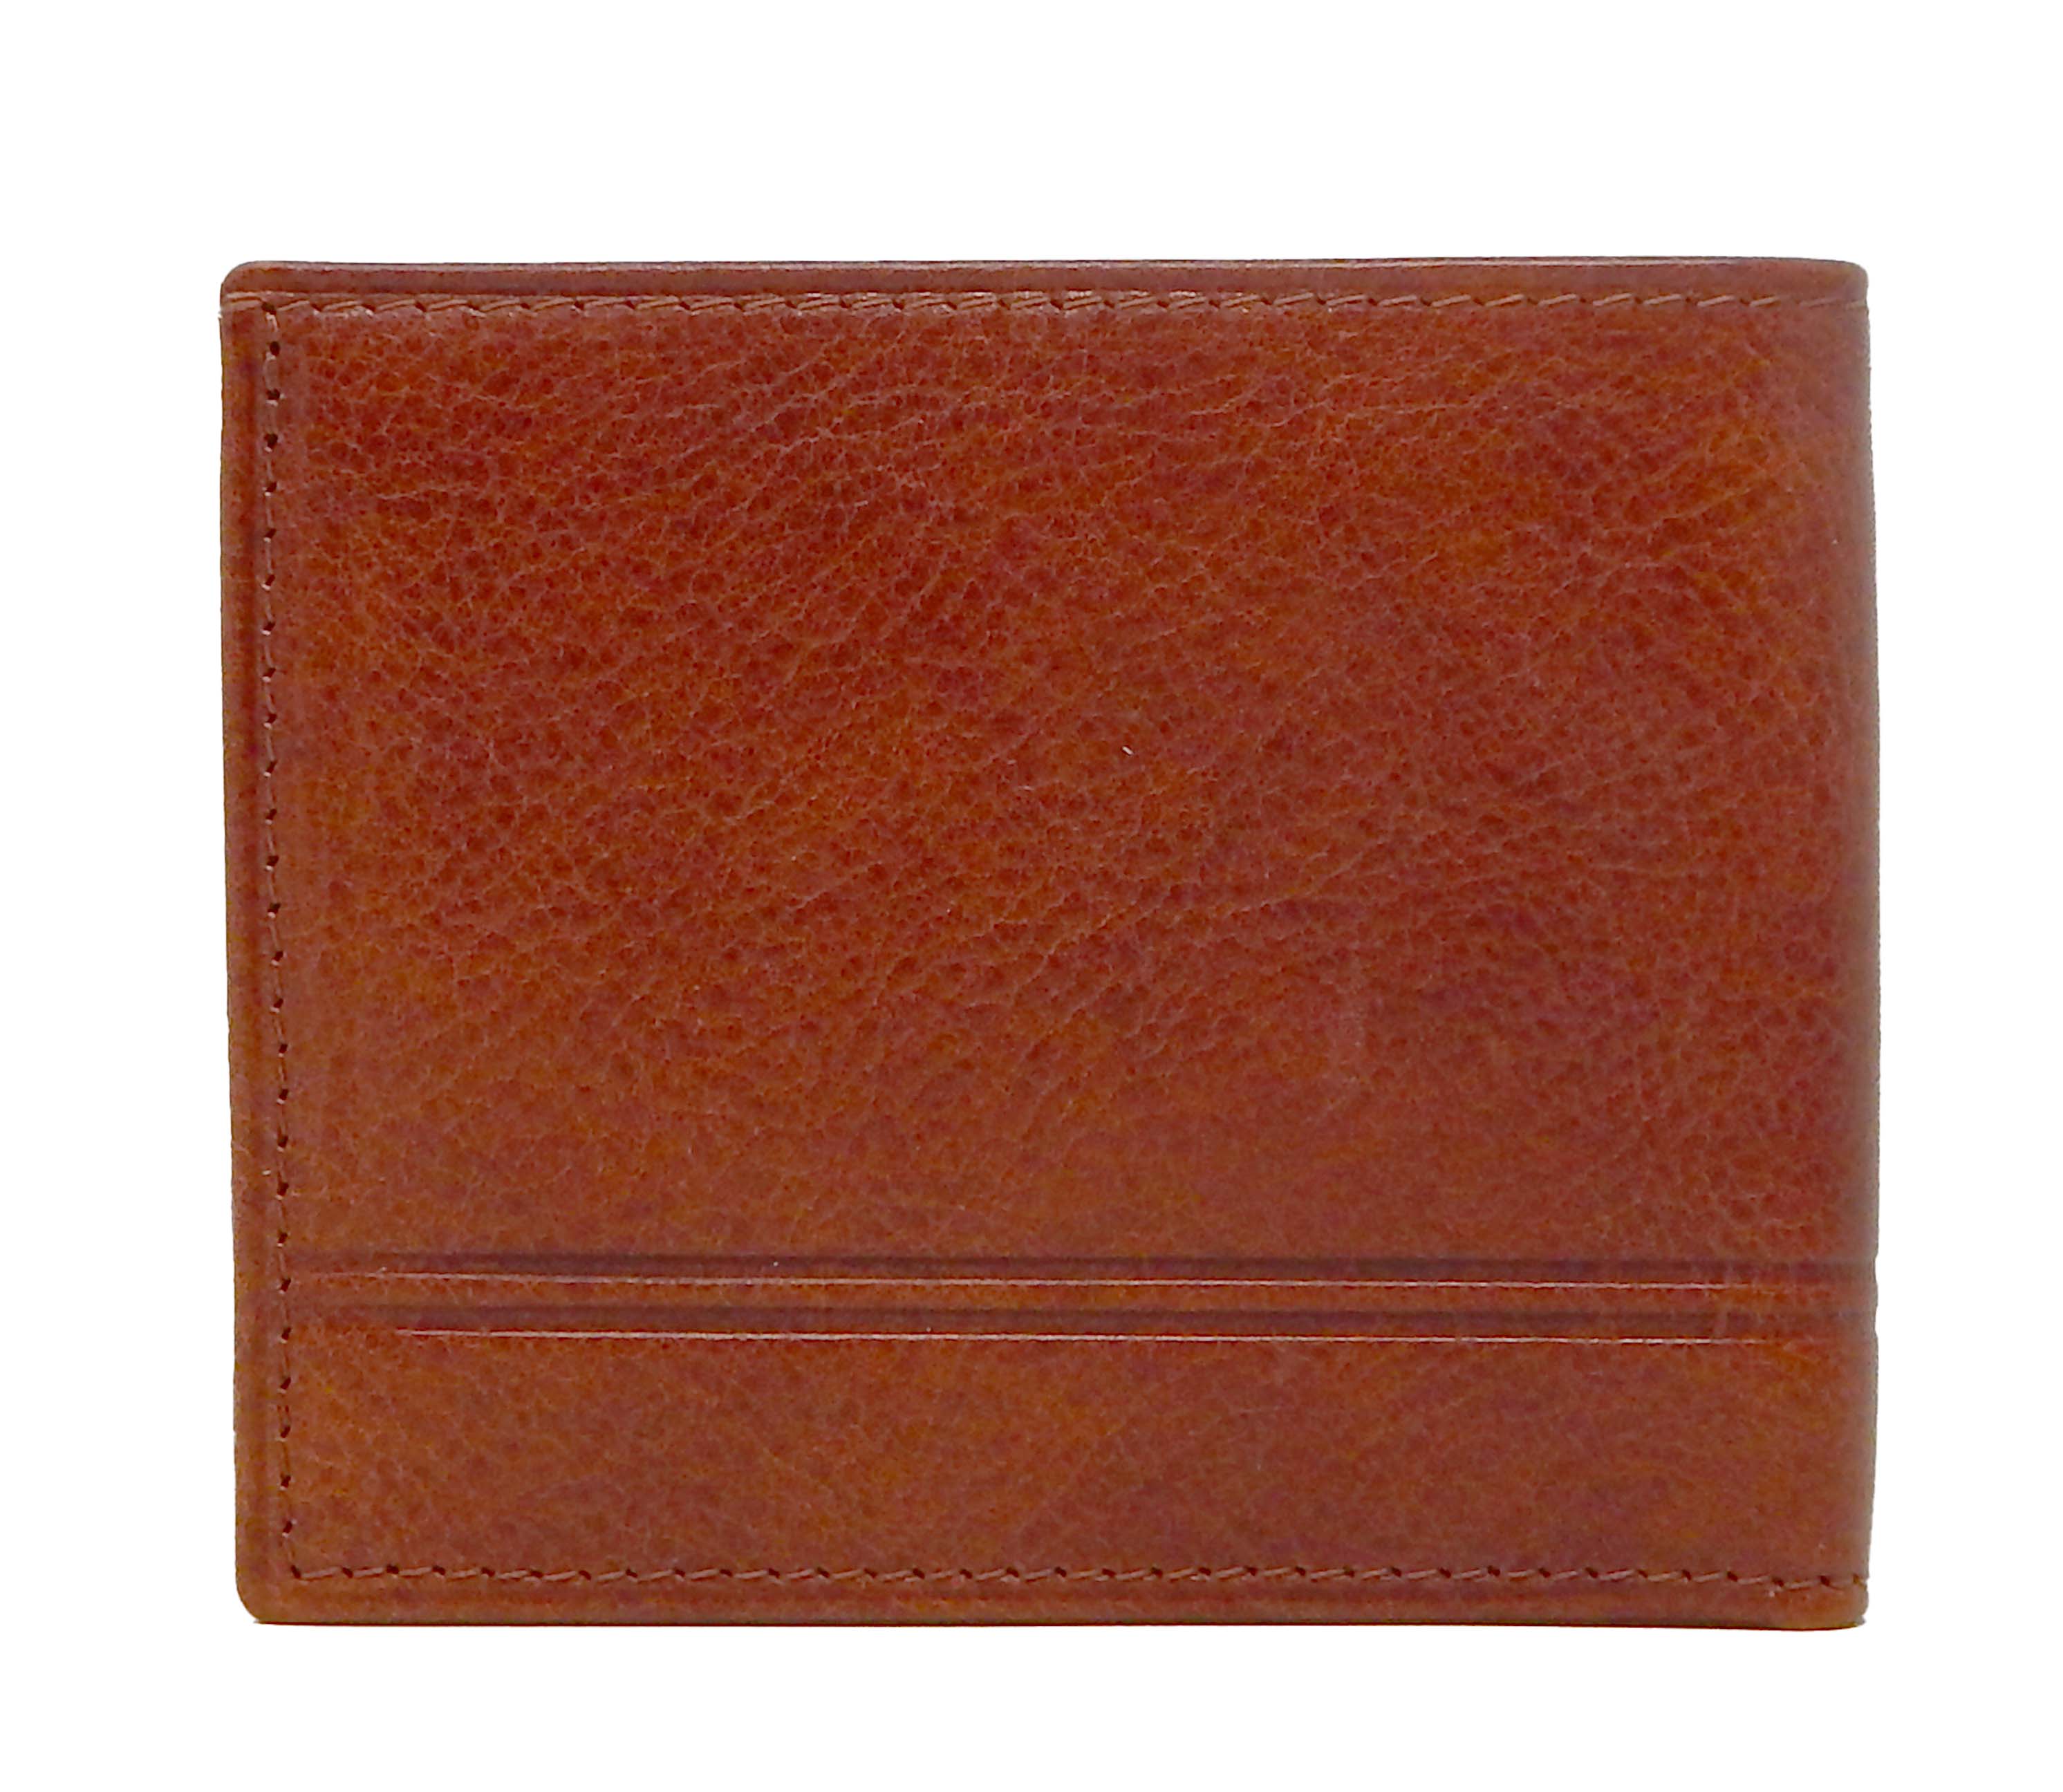 #color_ SaddleBrown | Cavalinho Men's Trifold Leather Wallet - SaddleBrown - 28610523.13.99_3